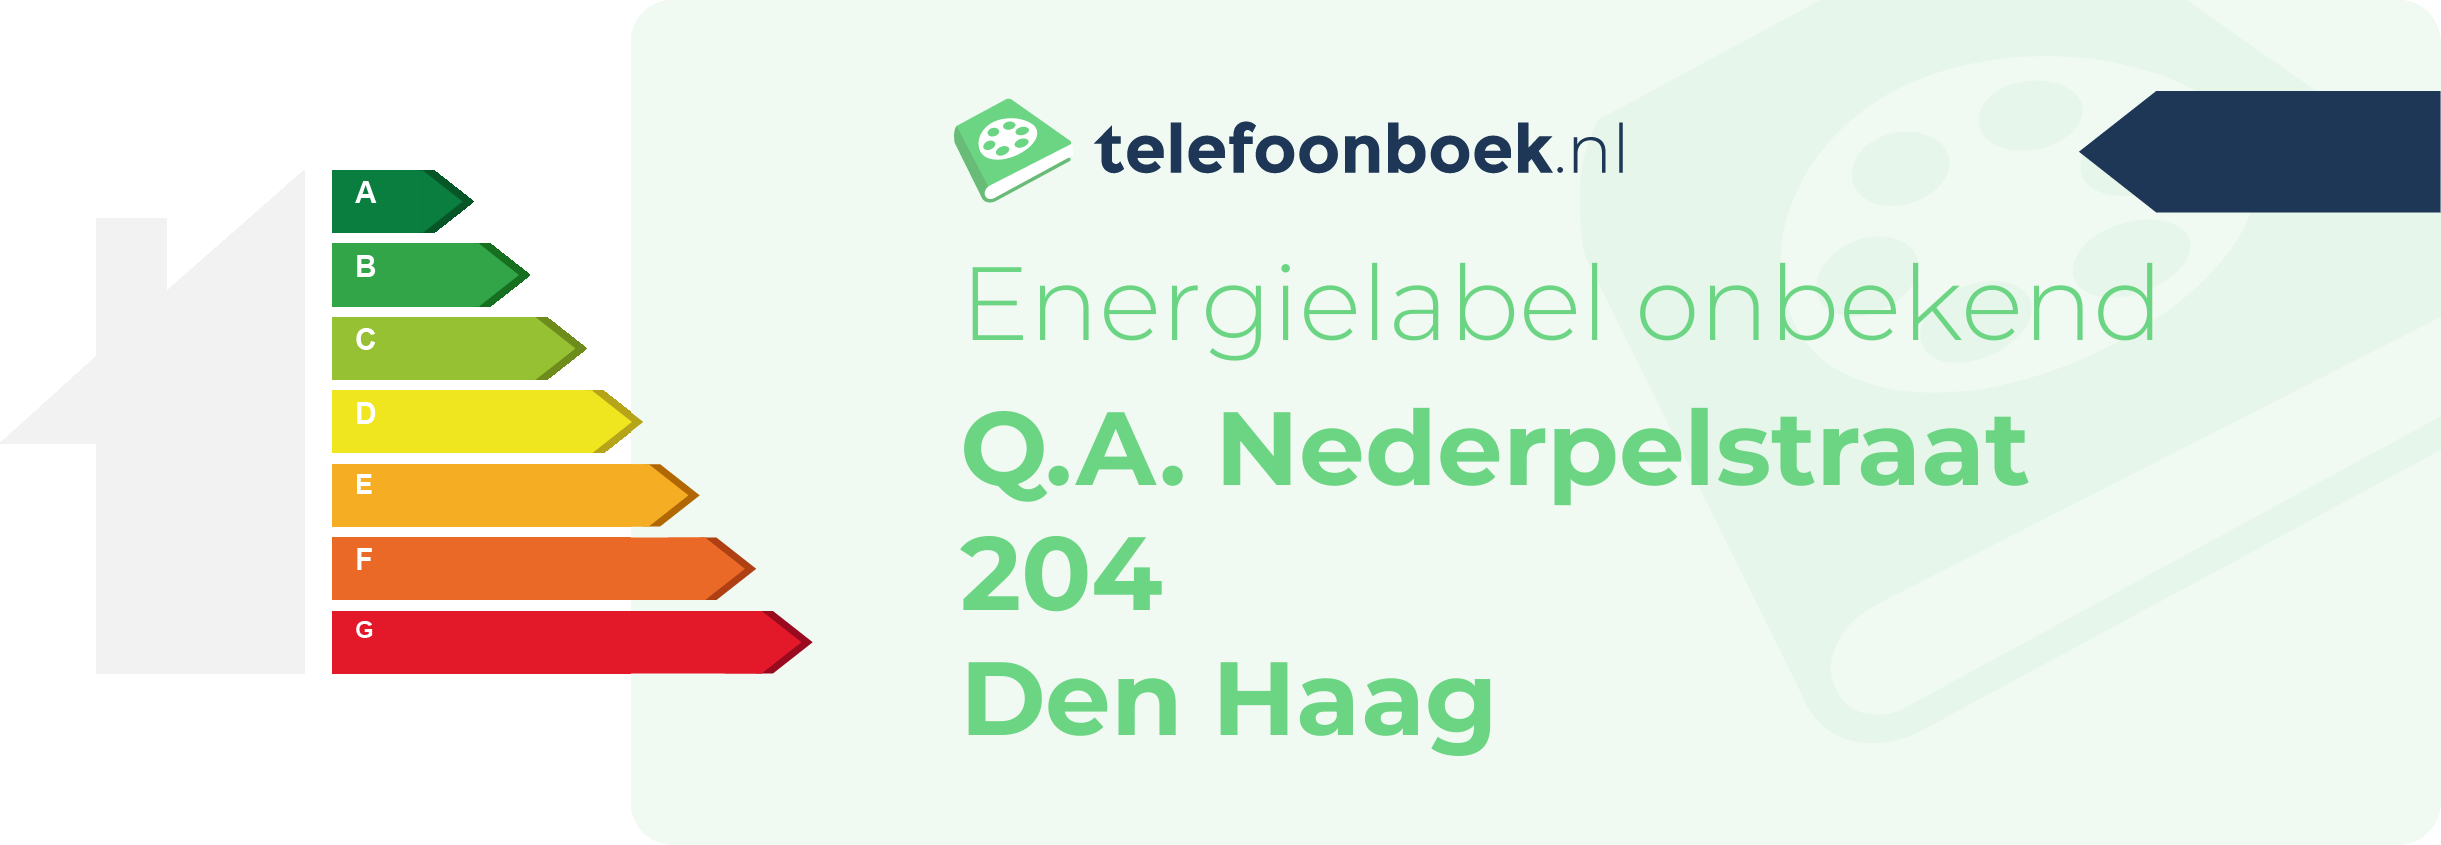 Energielabel Q.A. Nederpelstraat 204 Den Haag